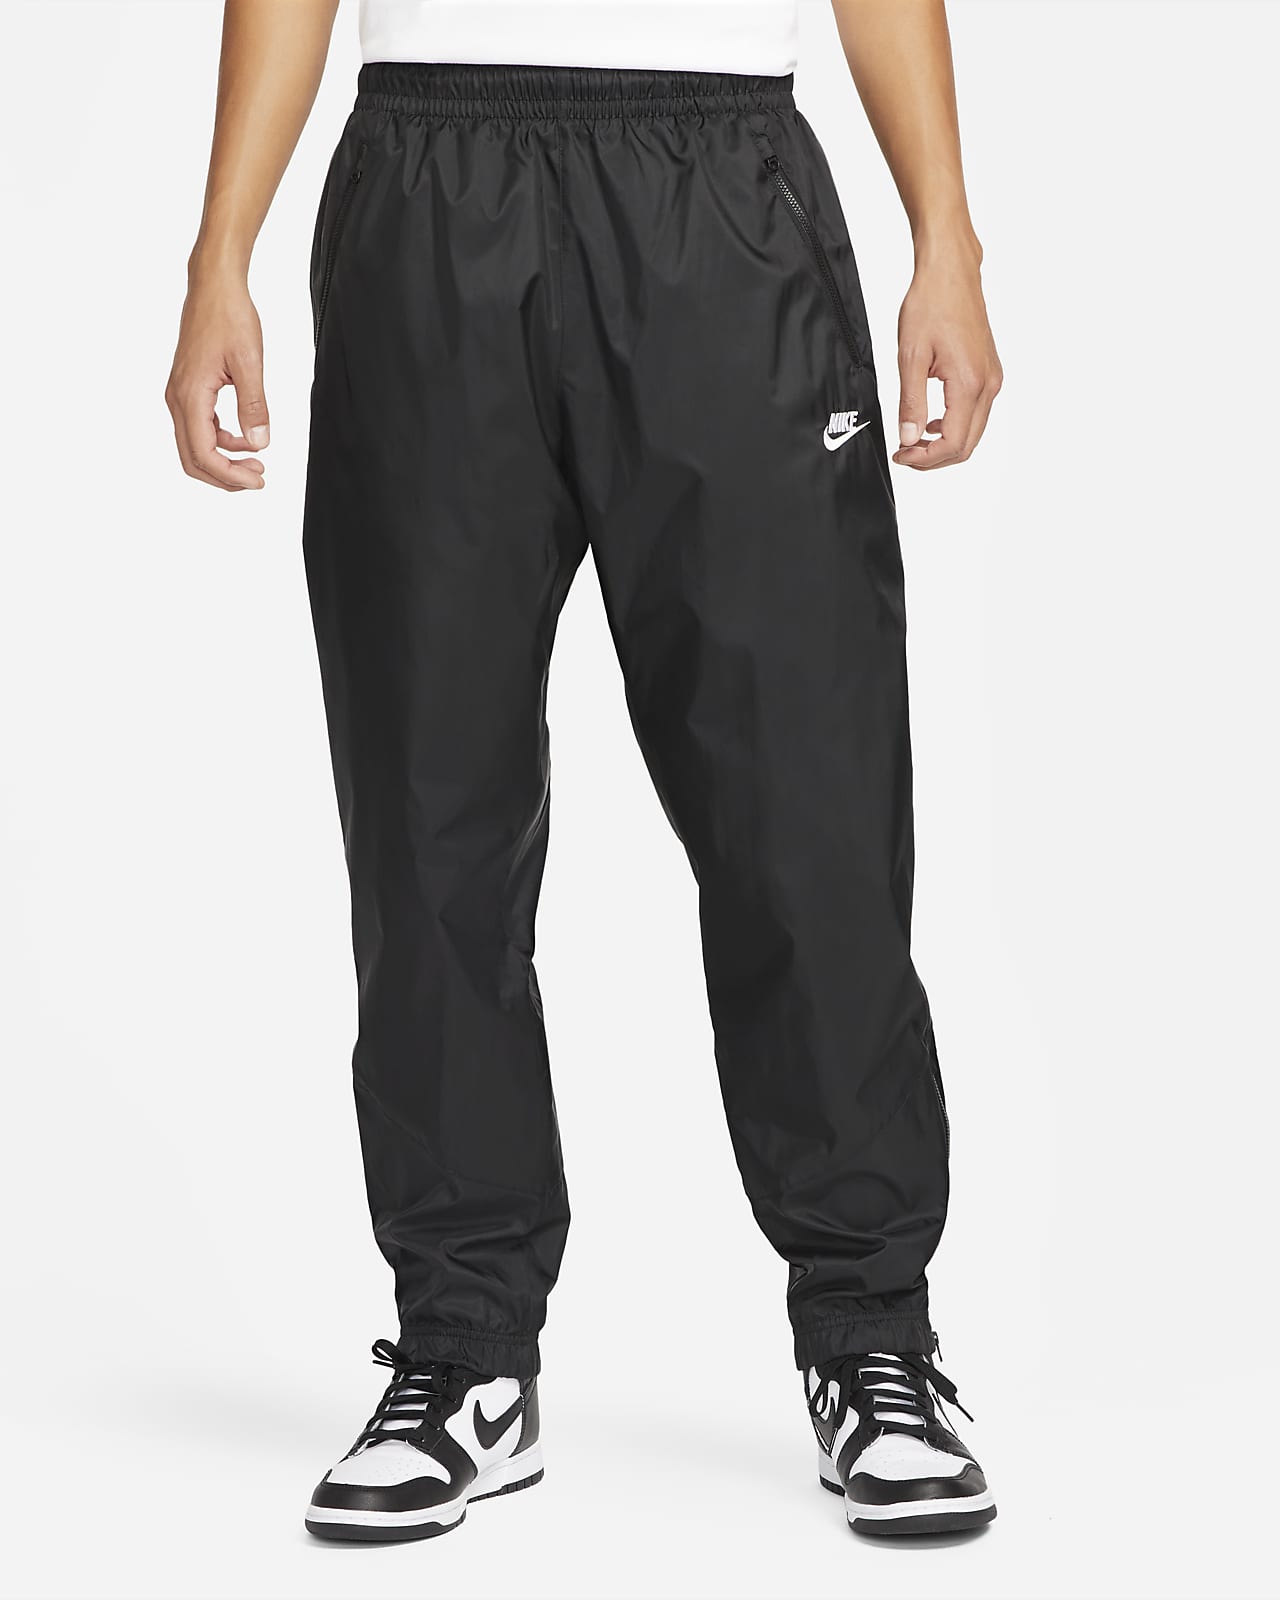 nwt~Nike Golf TOUR PERFORMANCE Dri-Fit MODERN TECH Pants Trousers~Men size  28/30 | eBay